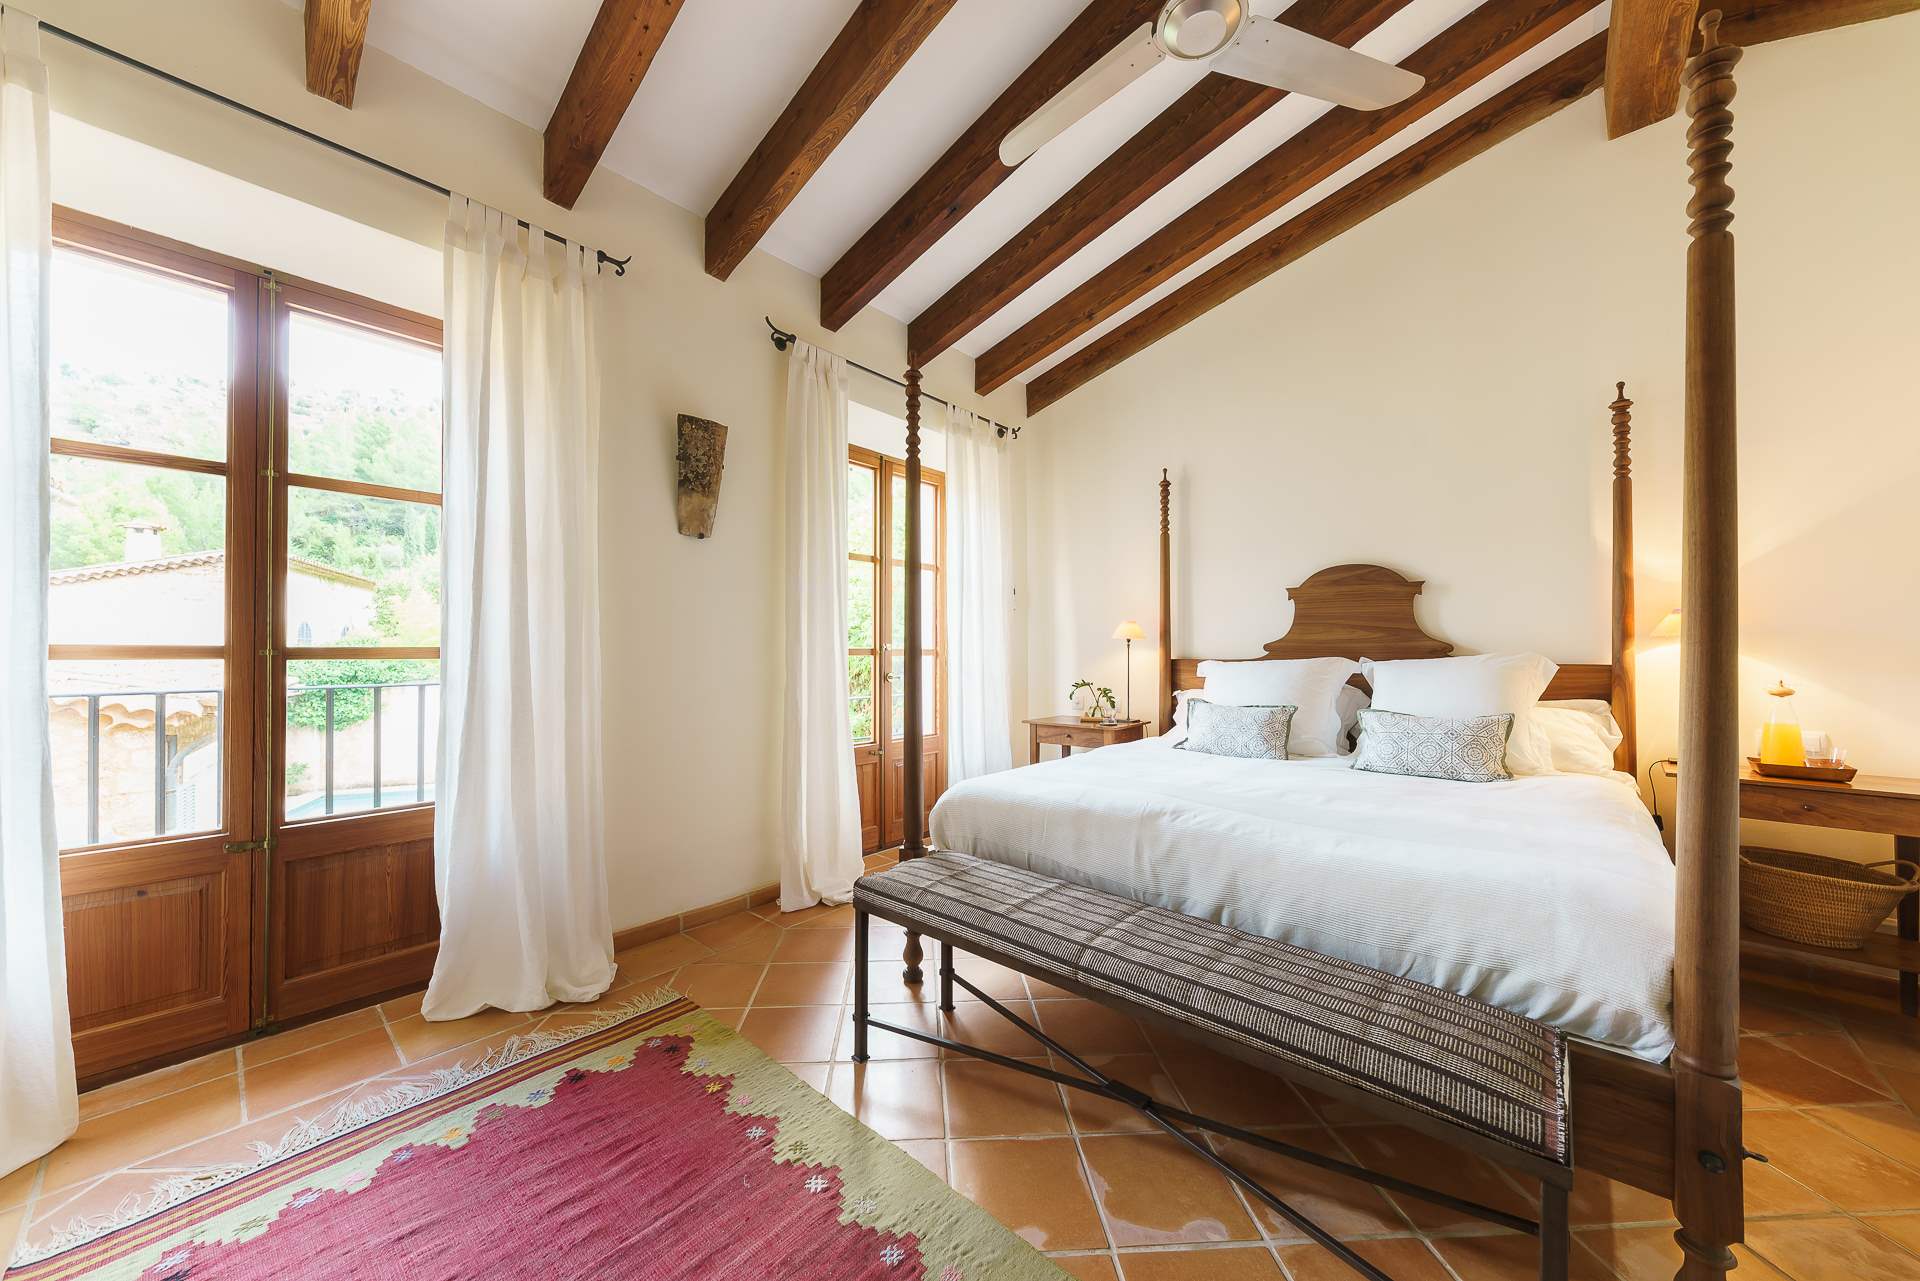 Sa Tanca, 3 Bedroom Rental, 3 bedroom villa in Soller & Deia, Majorca Photo #26